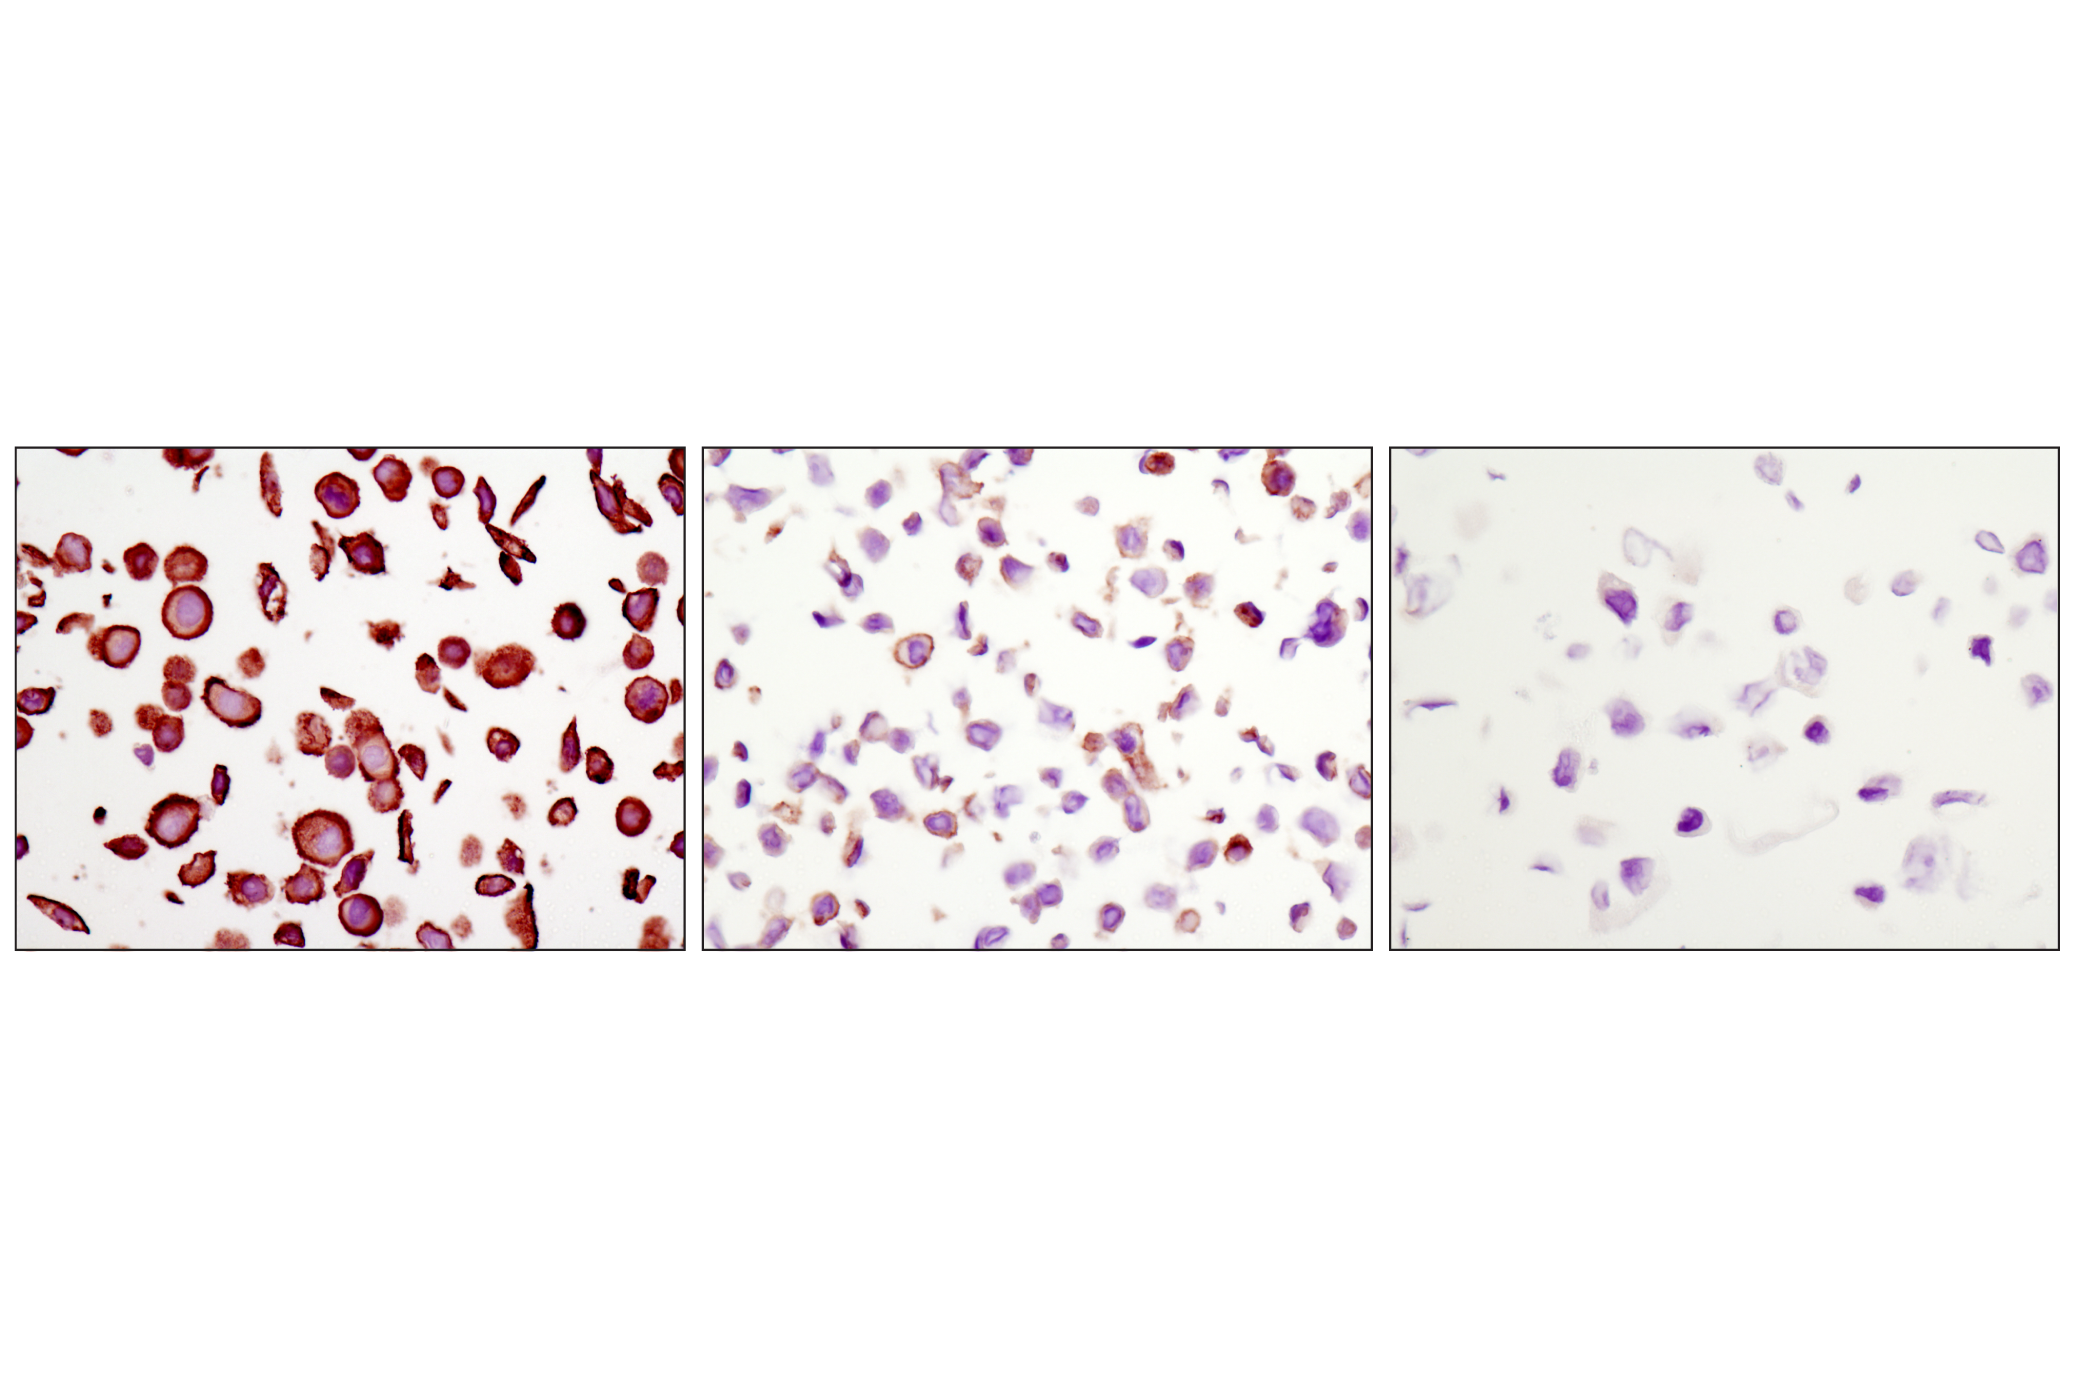  Image 49: HER/ErbB Family Antibody Sampler Kit